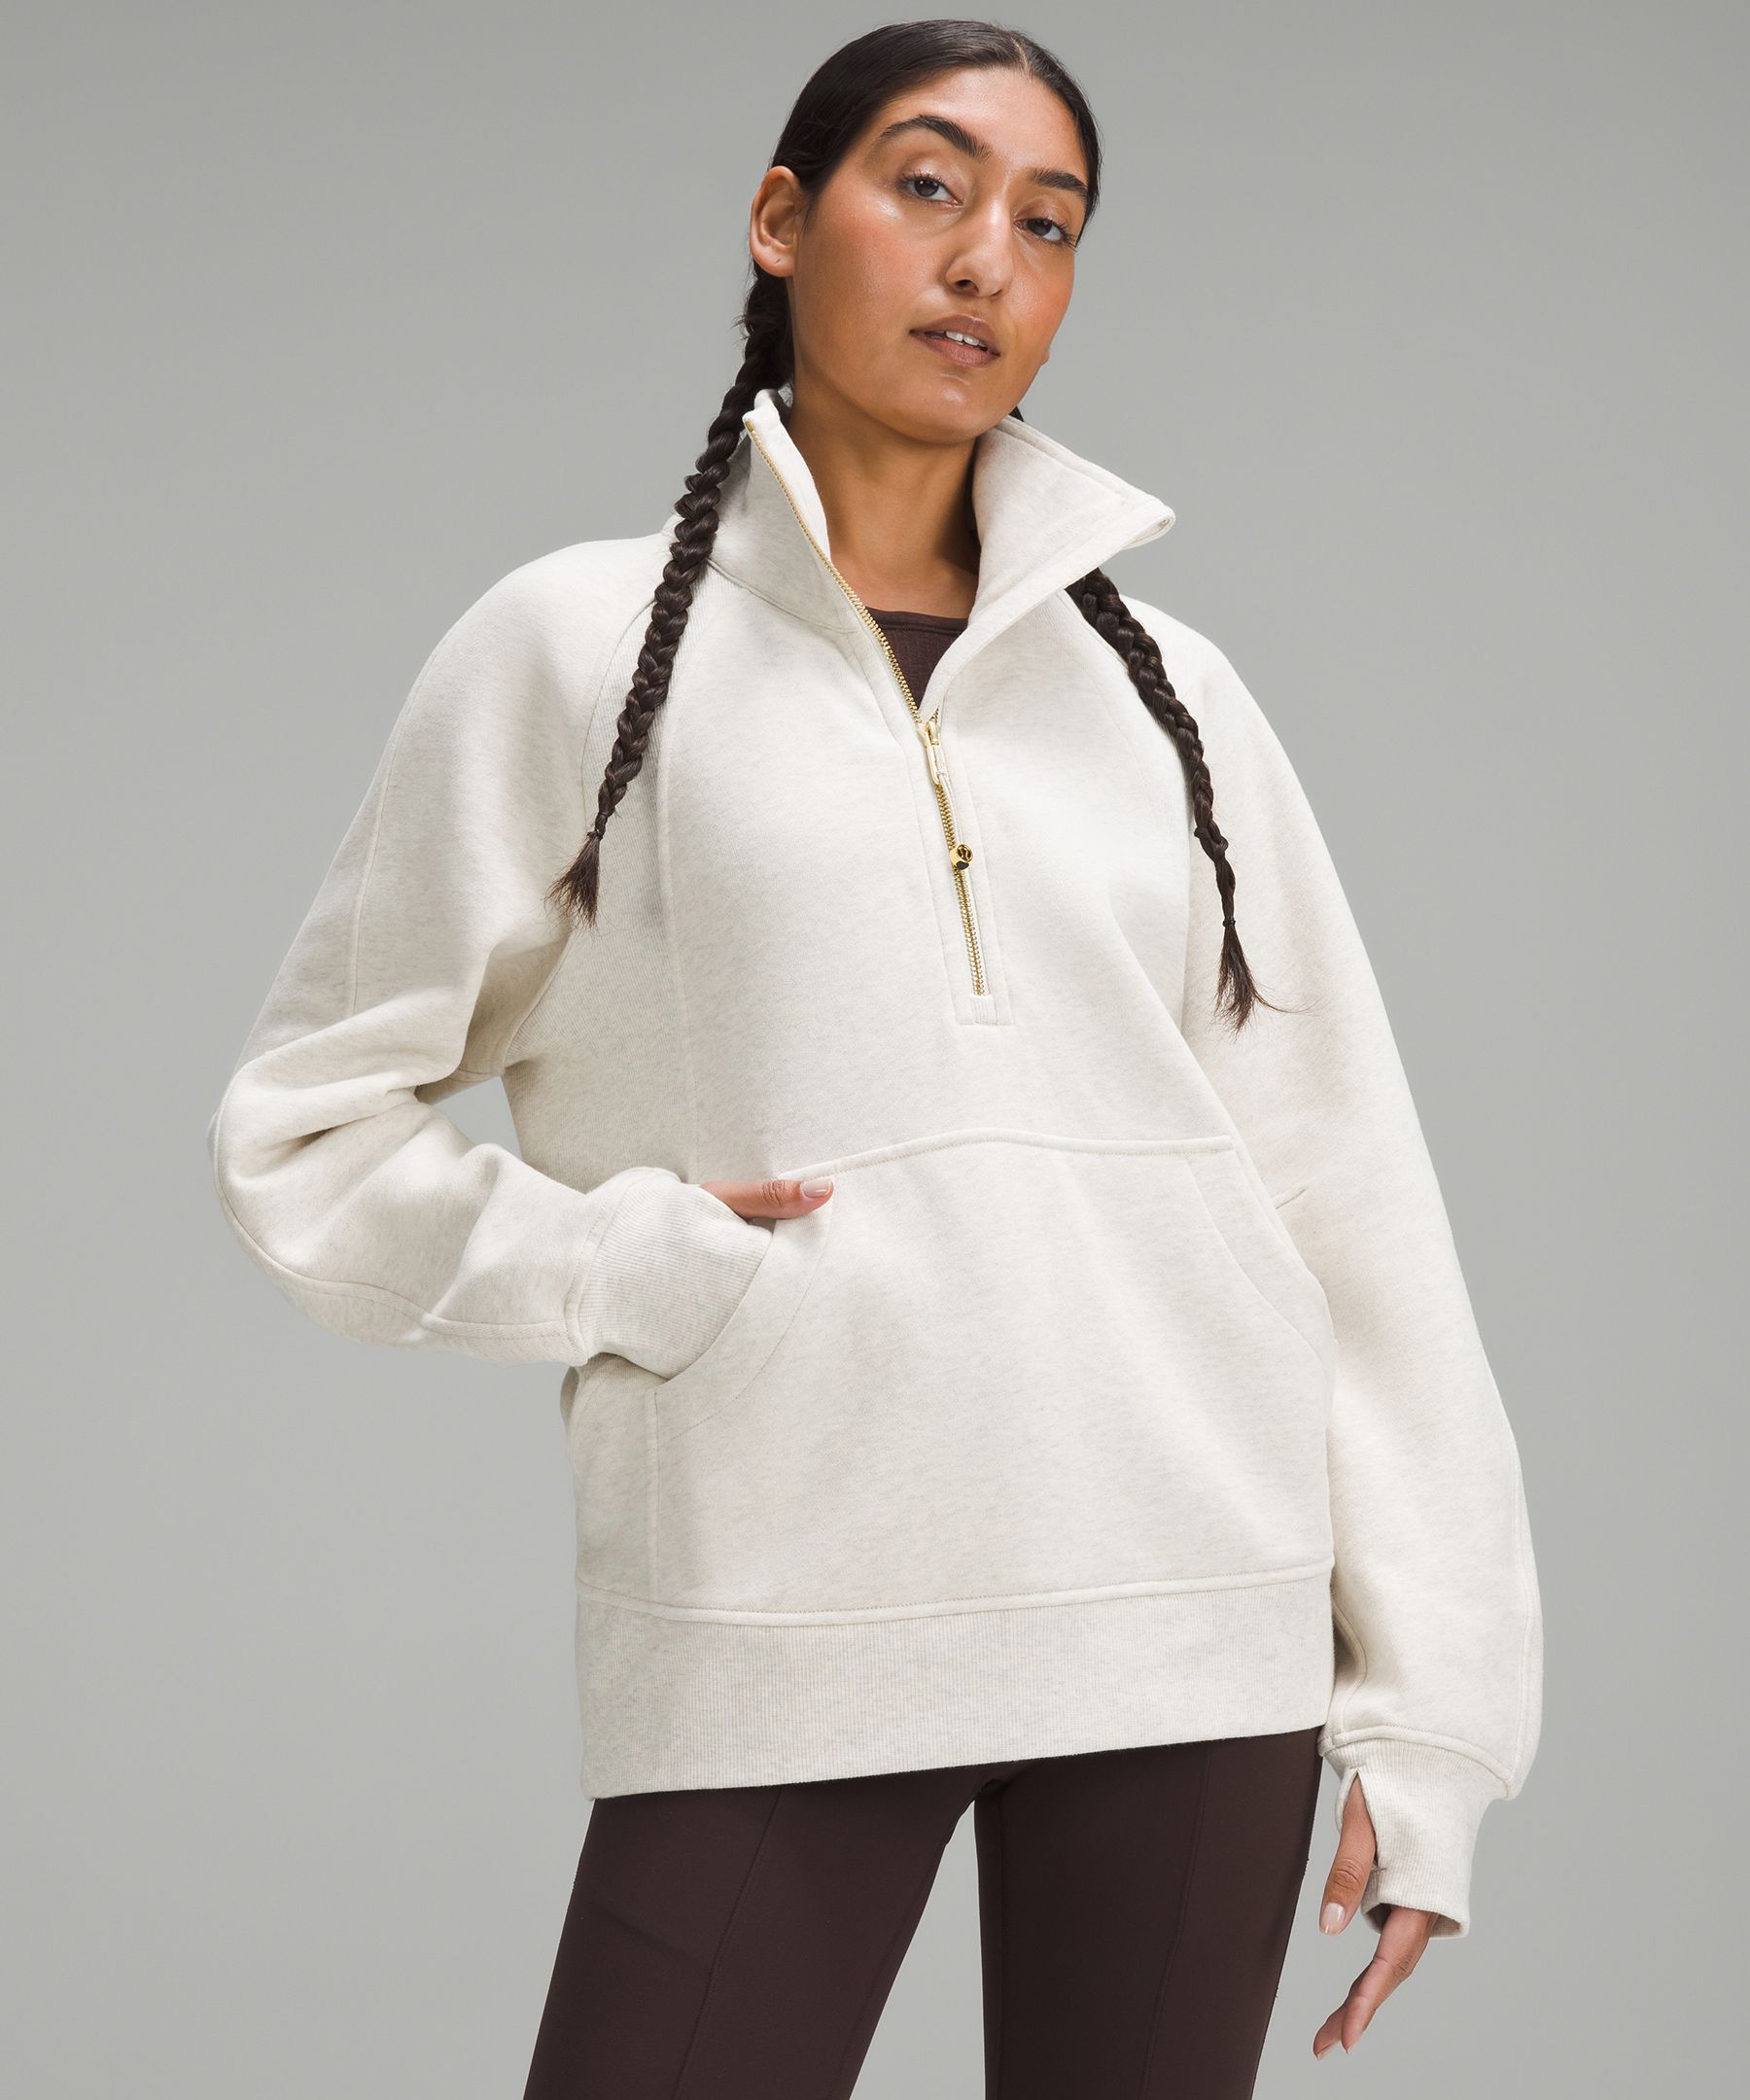 ODAWA Rosy Brown Ladies Sweatshirts Teen Sweatshirts Double Fleece